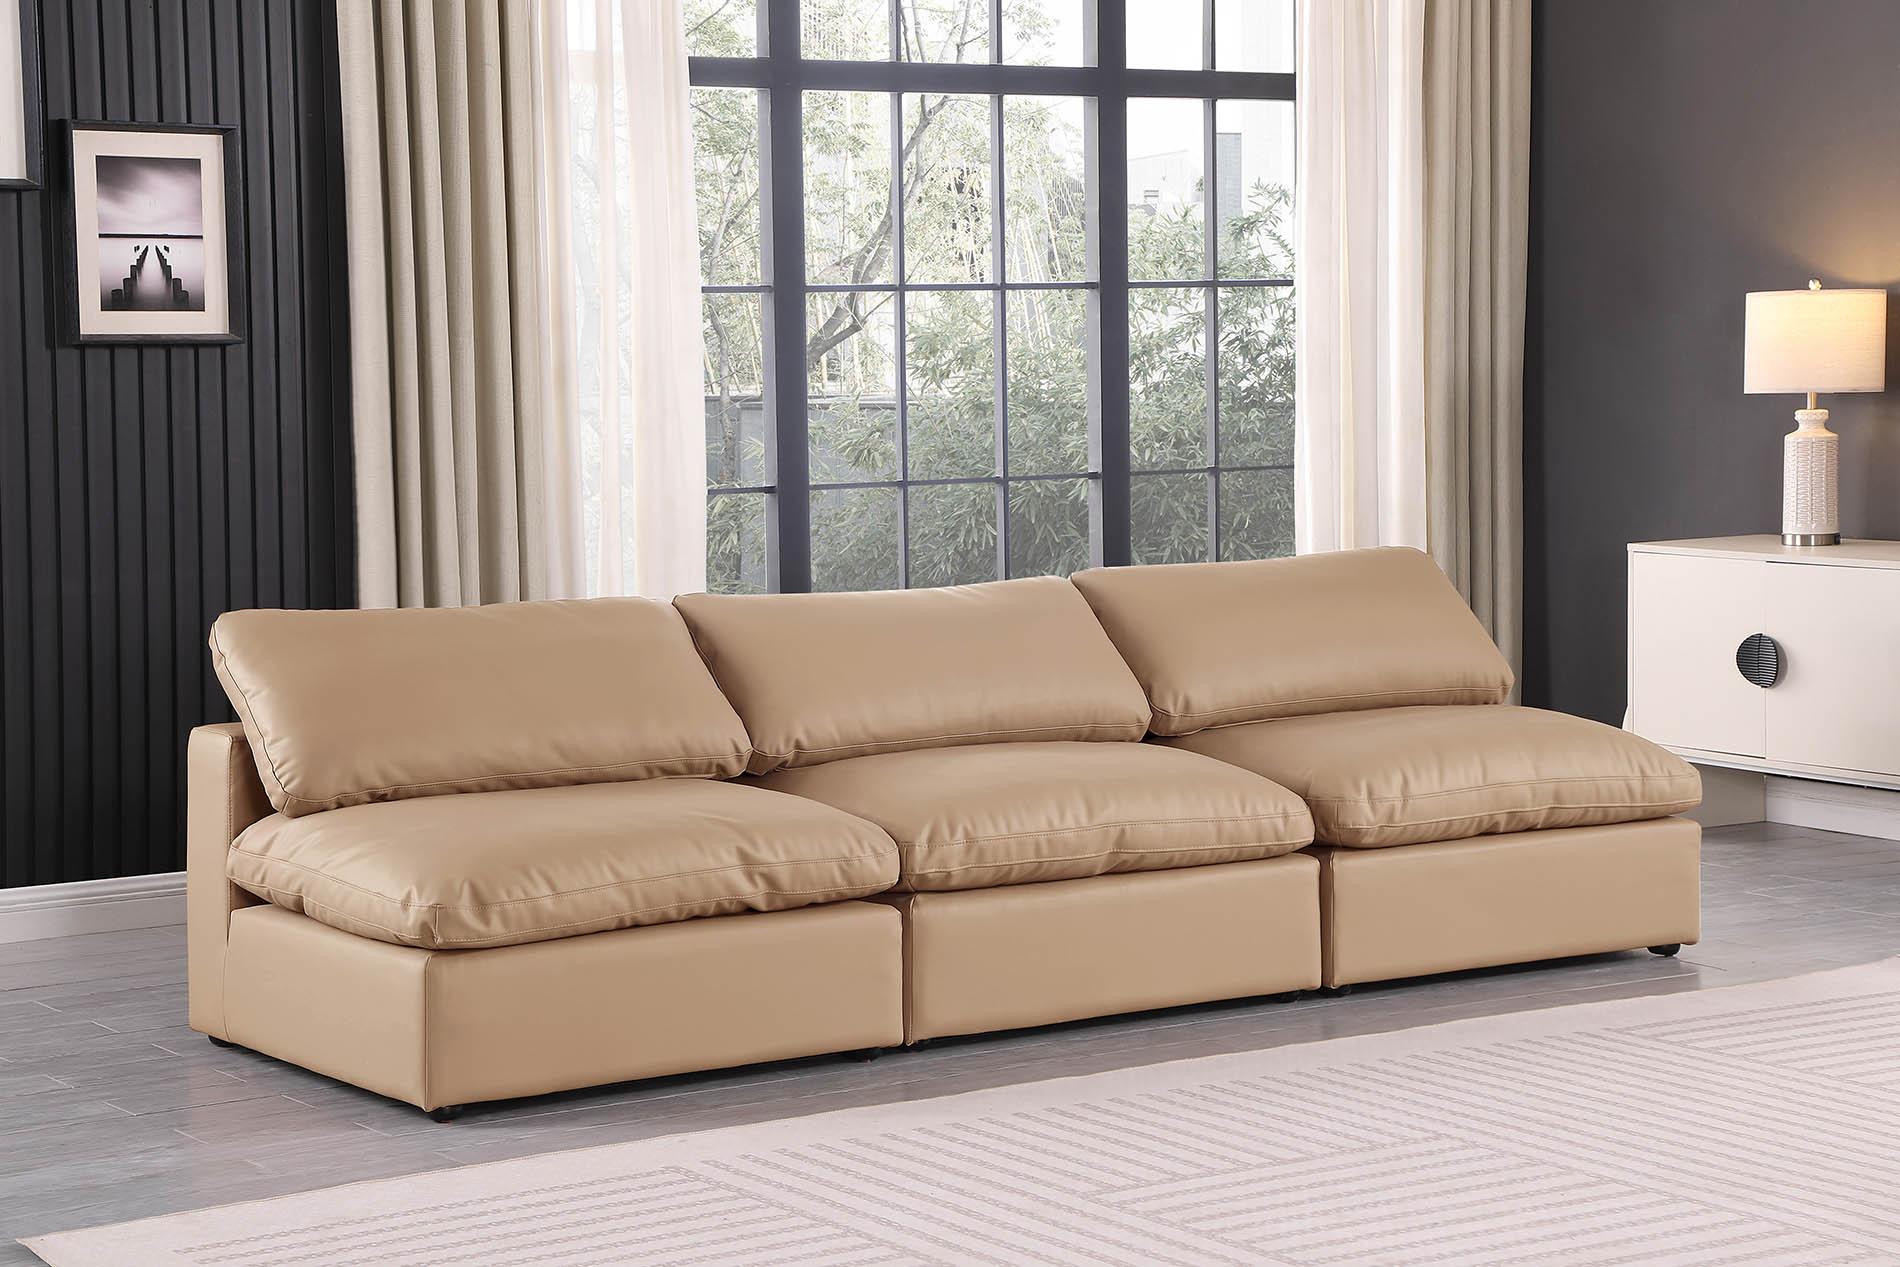 

    
Tan Vegan Leather Modular Sofa COMFY 188Tan-S117 Meridian Contemporary
